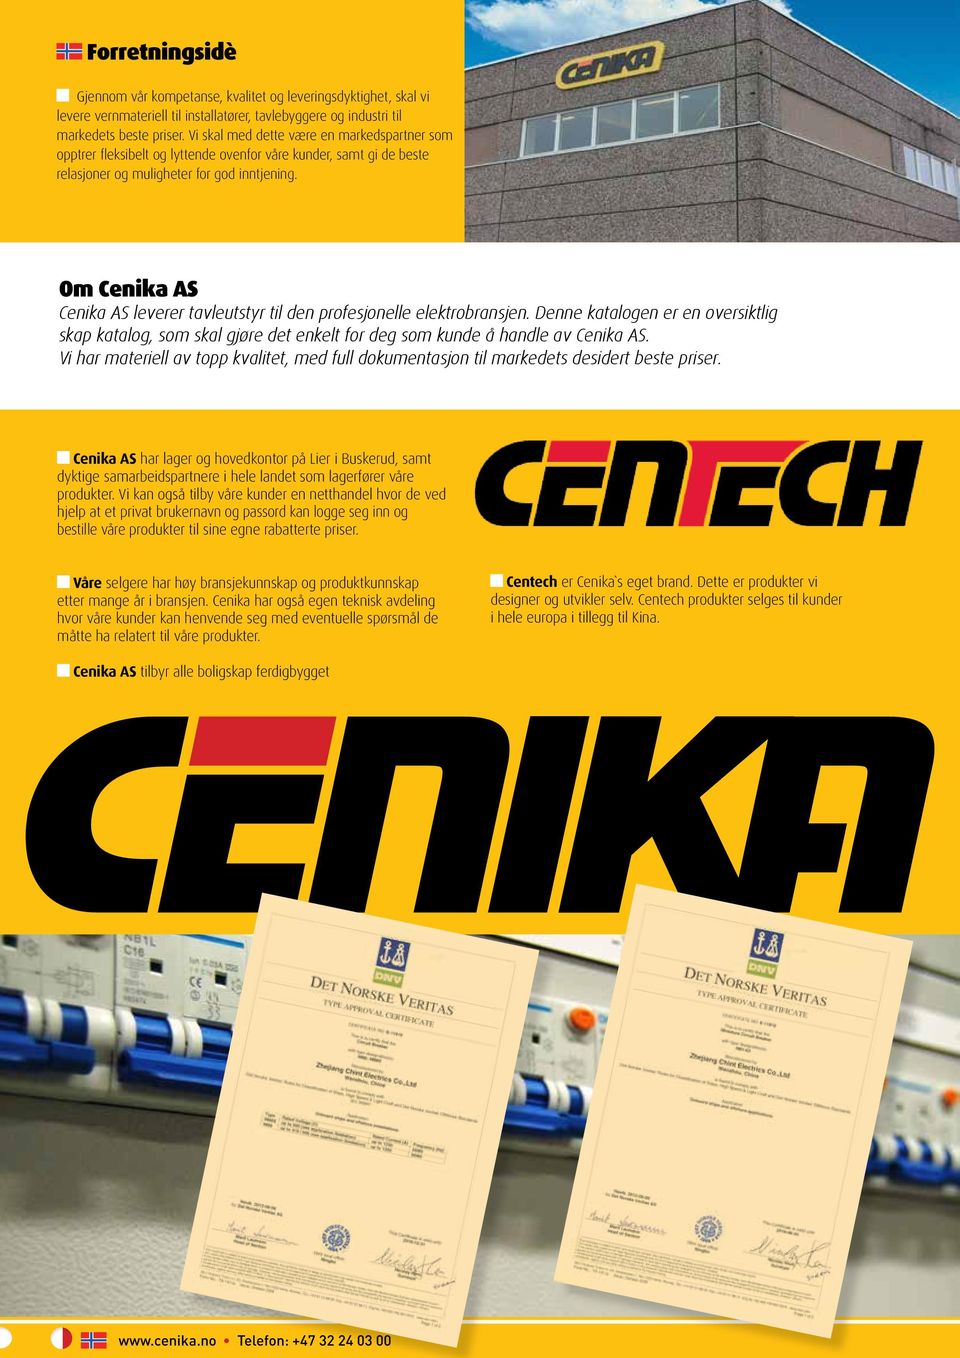 2 Om Cenika AS Cenika AS leverer tavleutstyr til den profesjonelle elektrobransjen. Denne katalogen er en oversiktlig skap katalog, som skal gjøre det enkelt for deg som kunde å handle av Cenika AS.